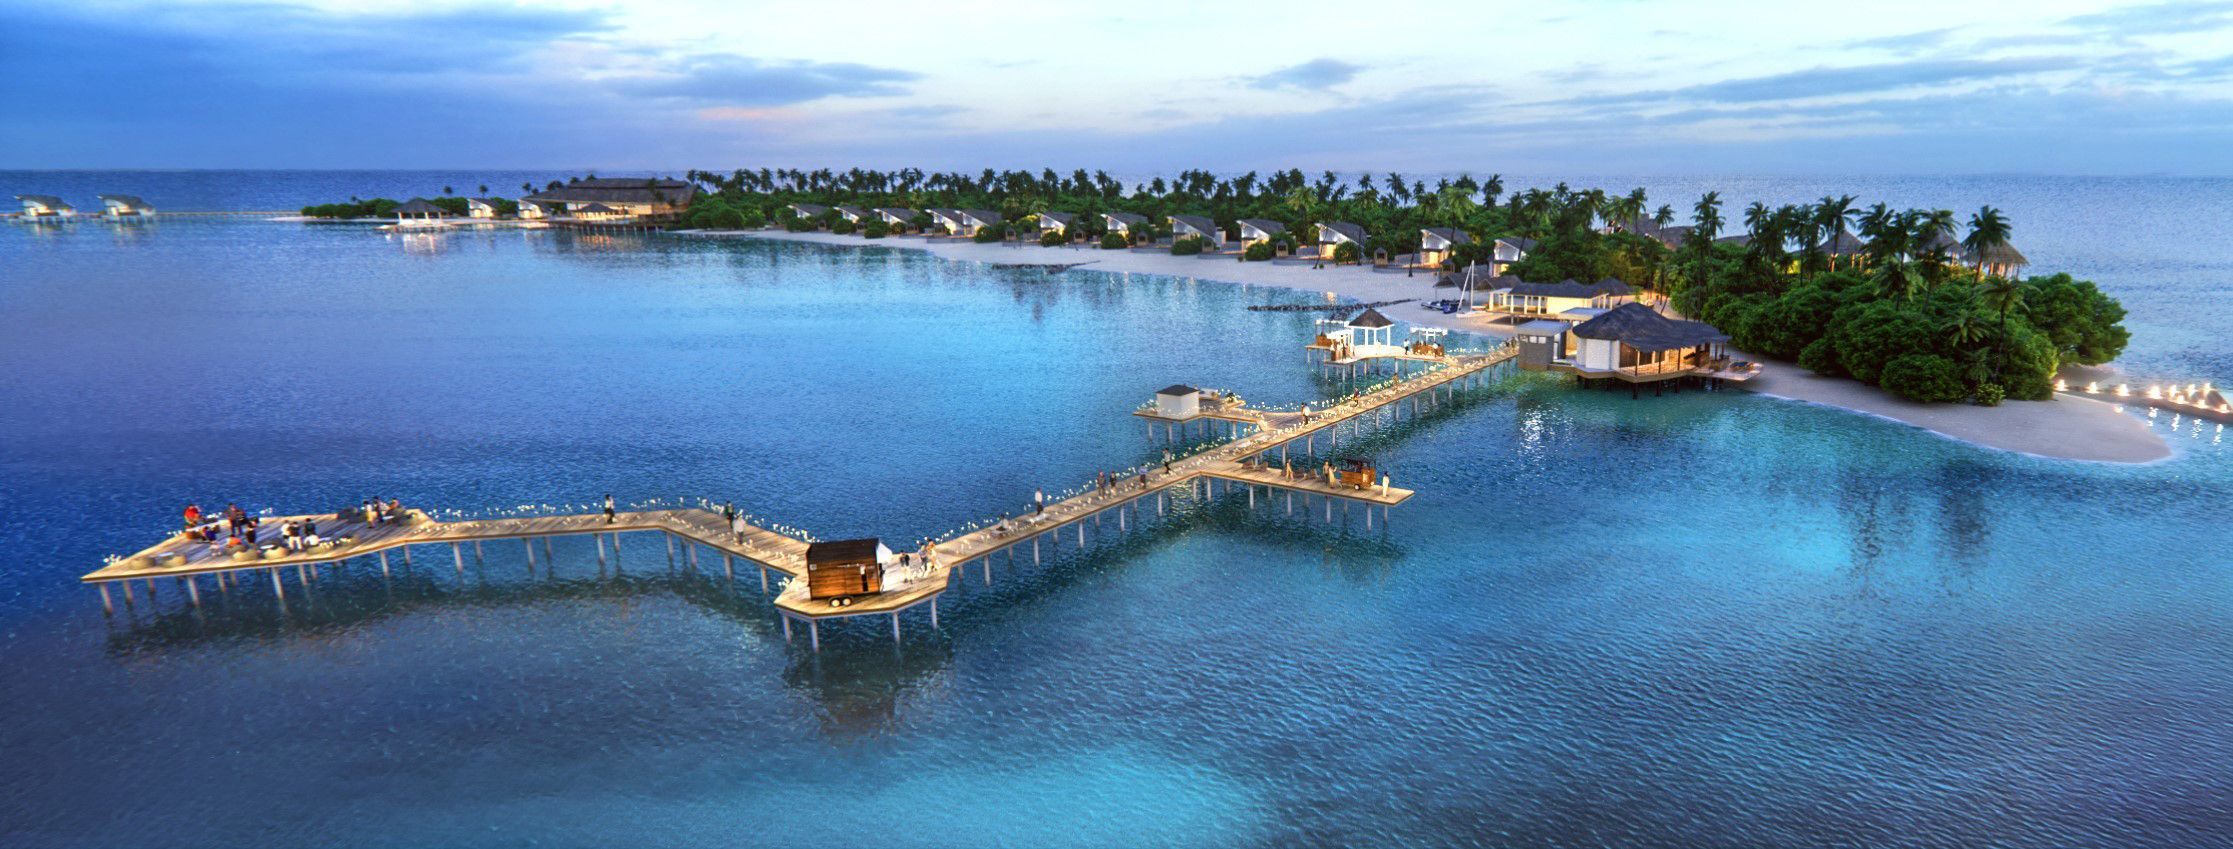 JW Marriott Maldives Resort and Spa